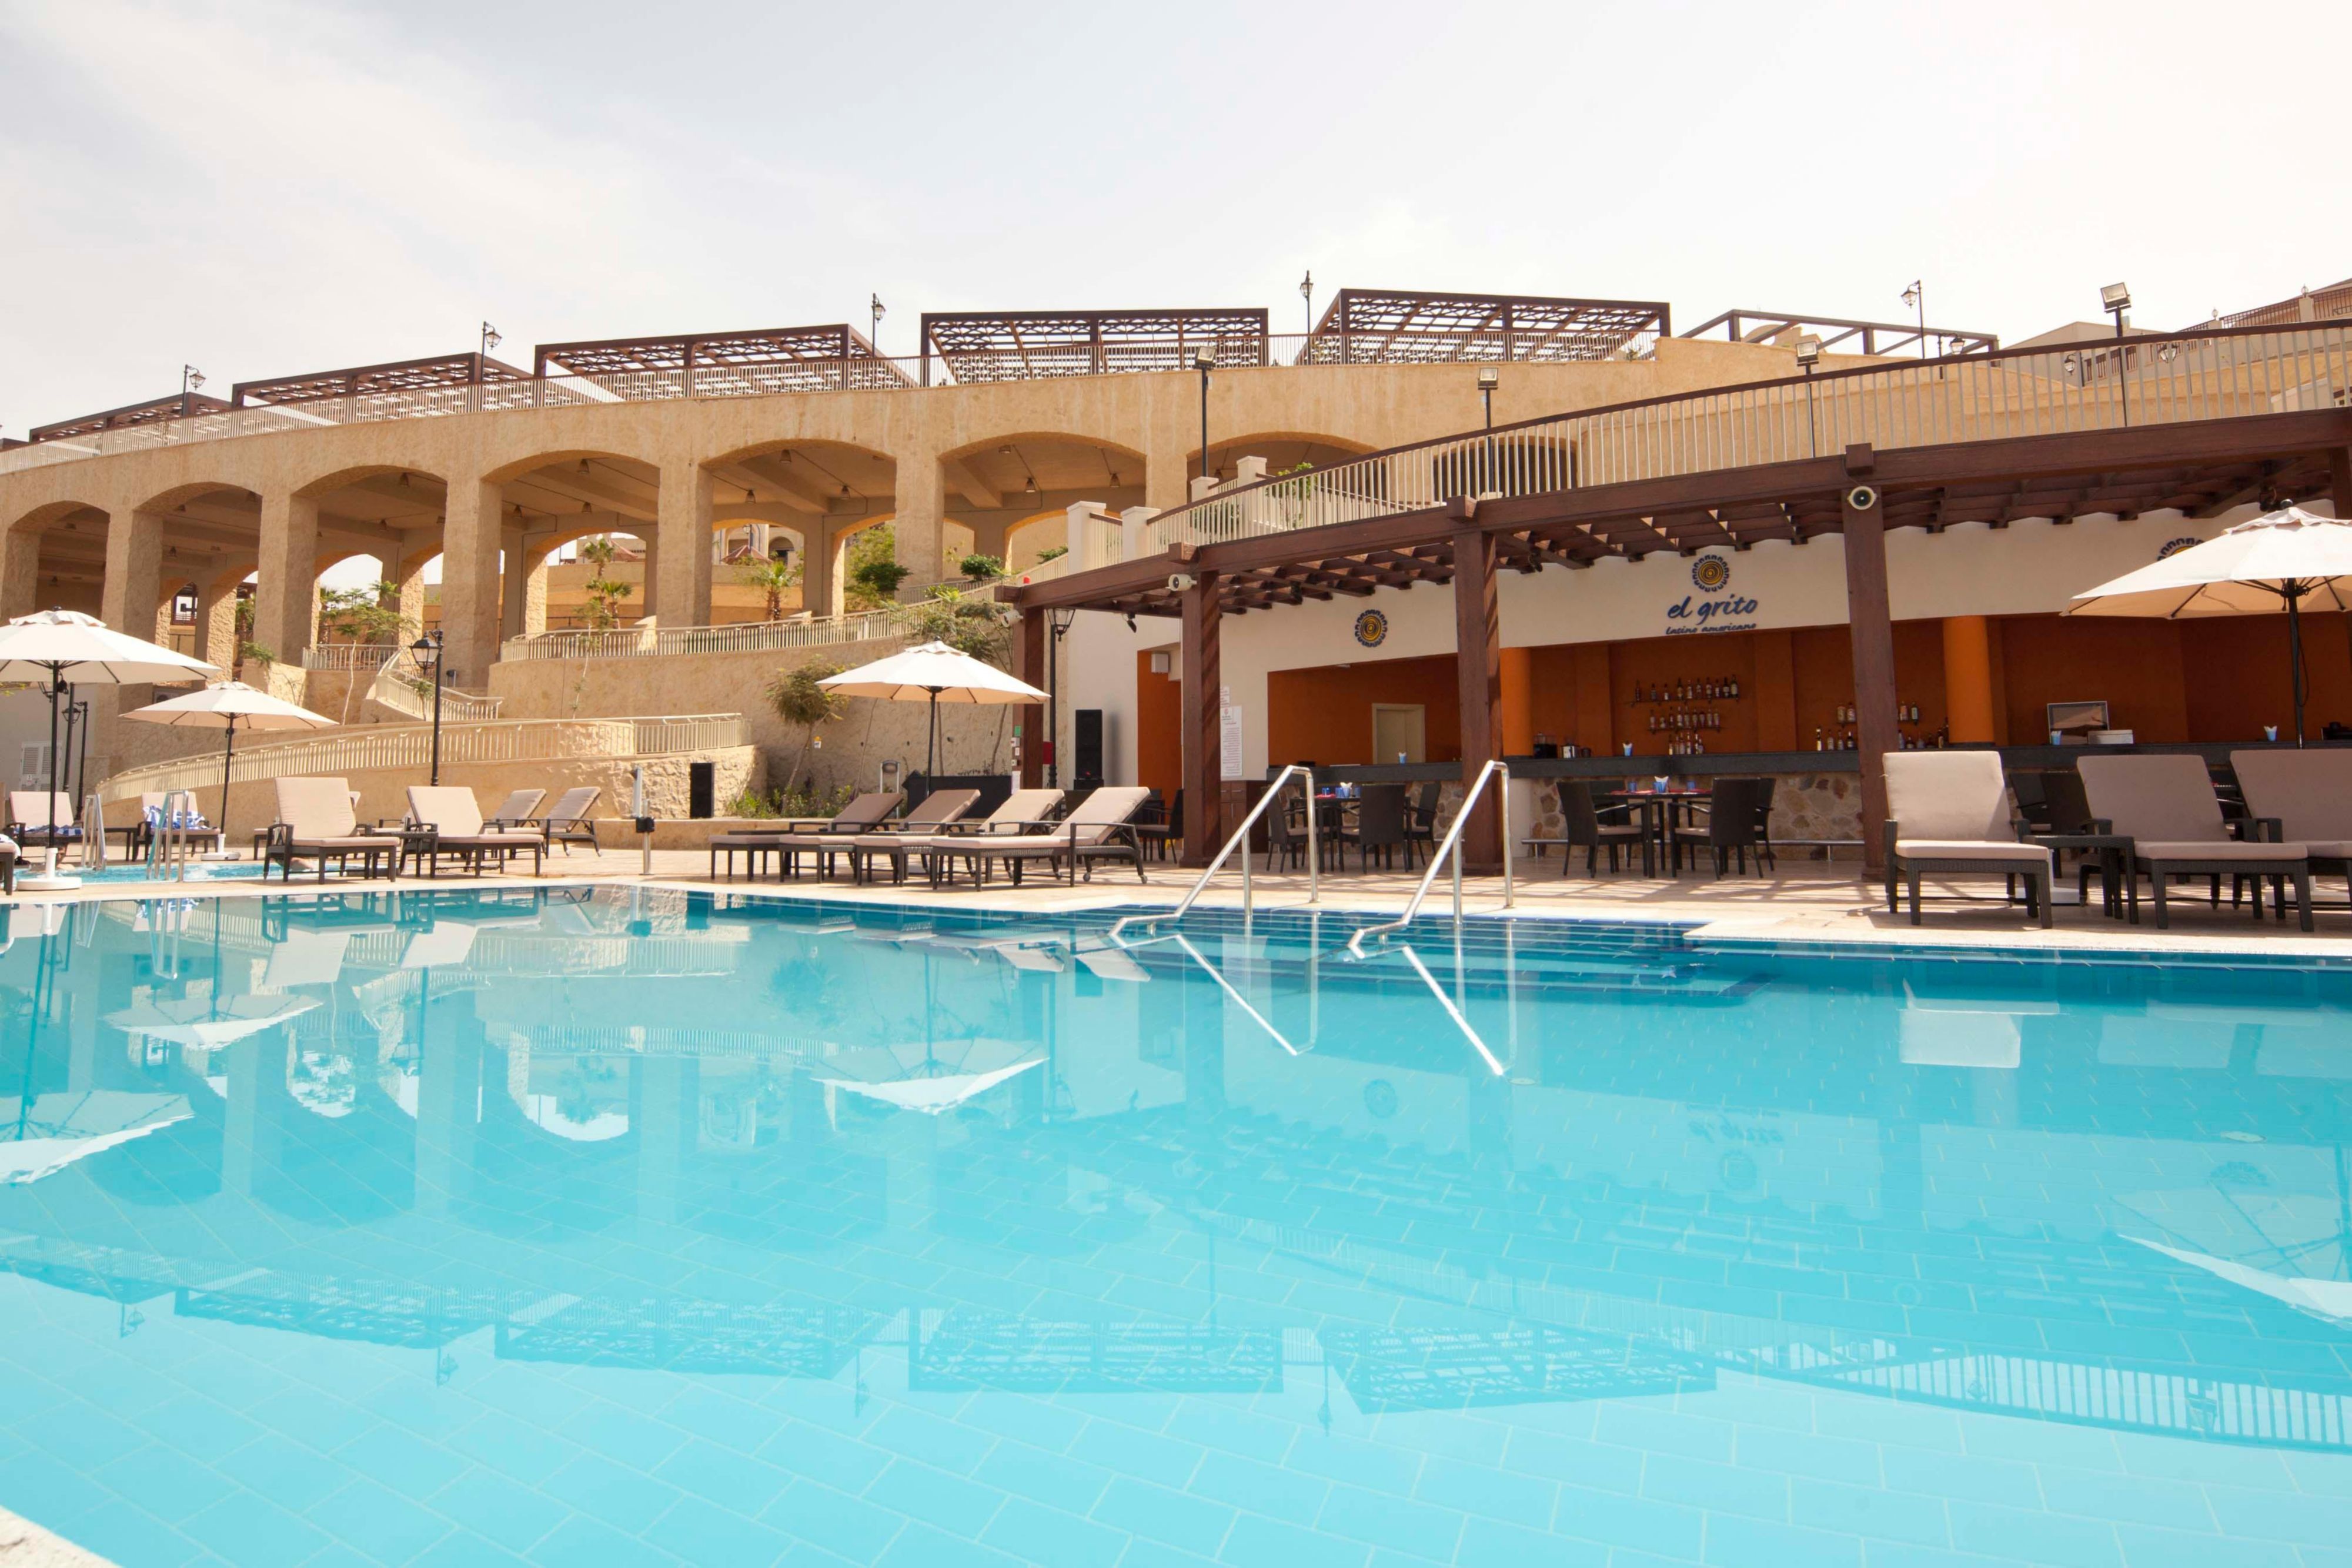 Enjoy a refreshing swim at El Grito heated pool